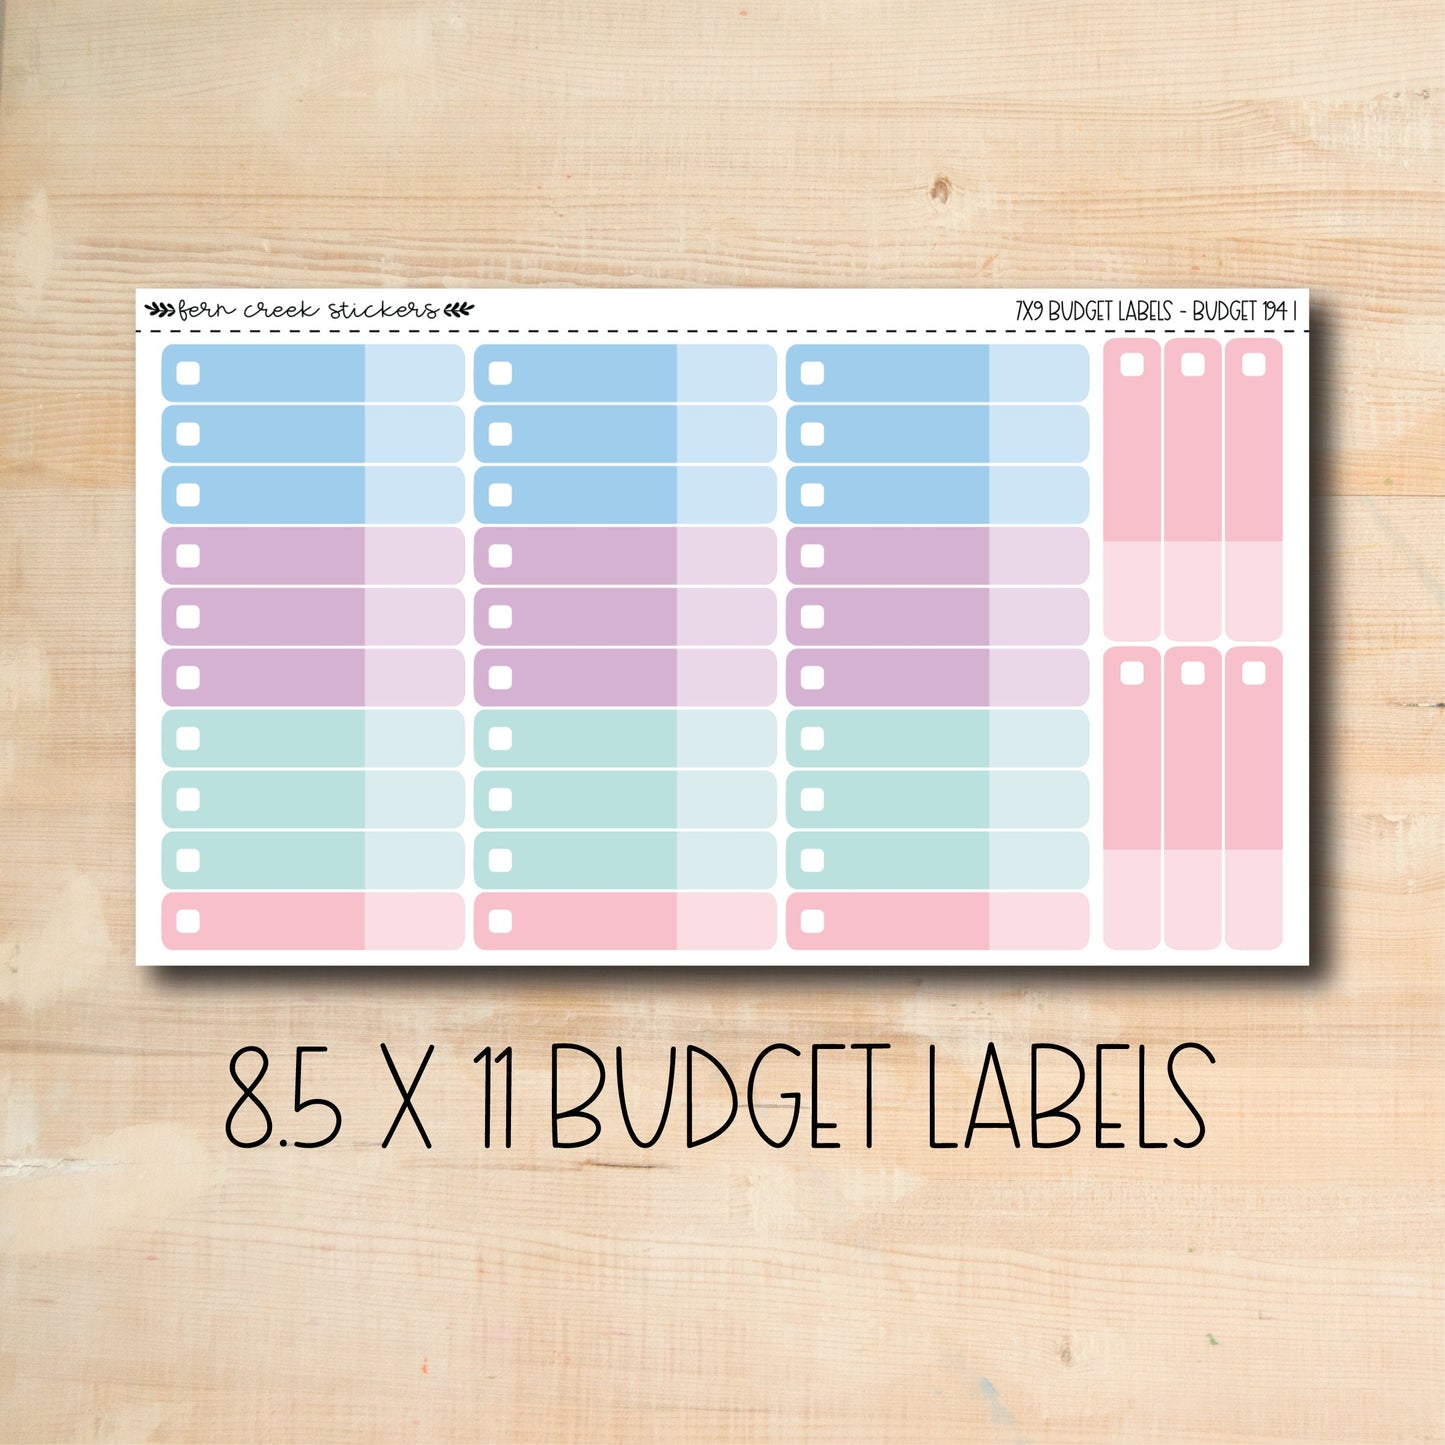 BUDGET-194 || WINTER MAGIC 8.5x11 budget labels